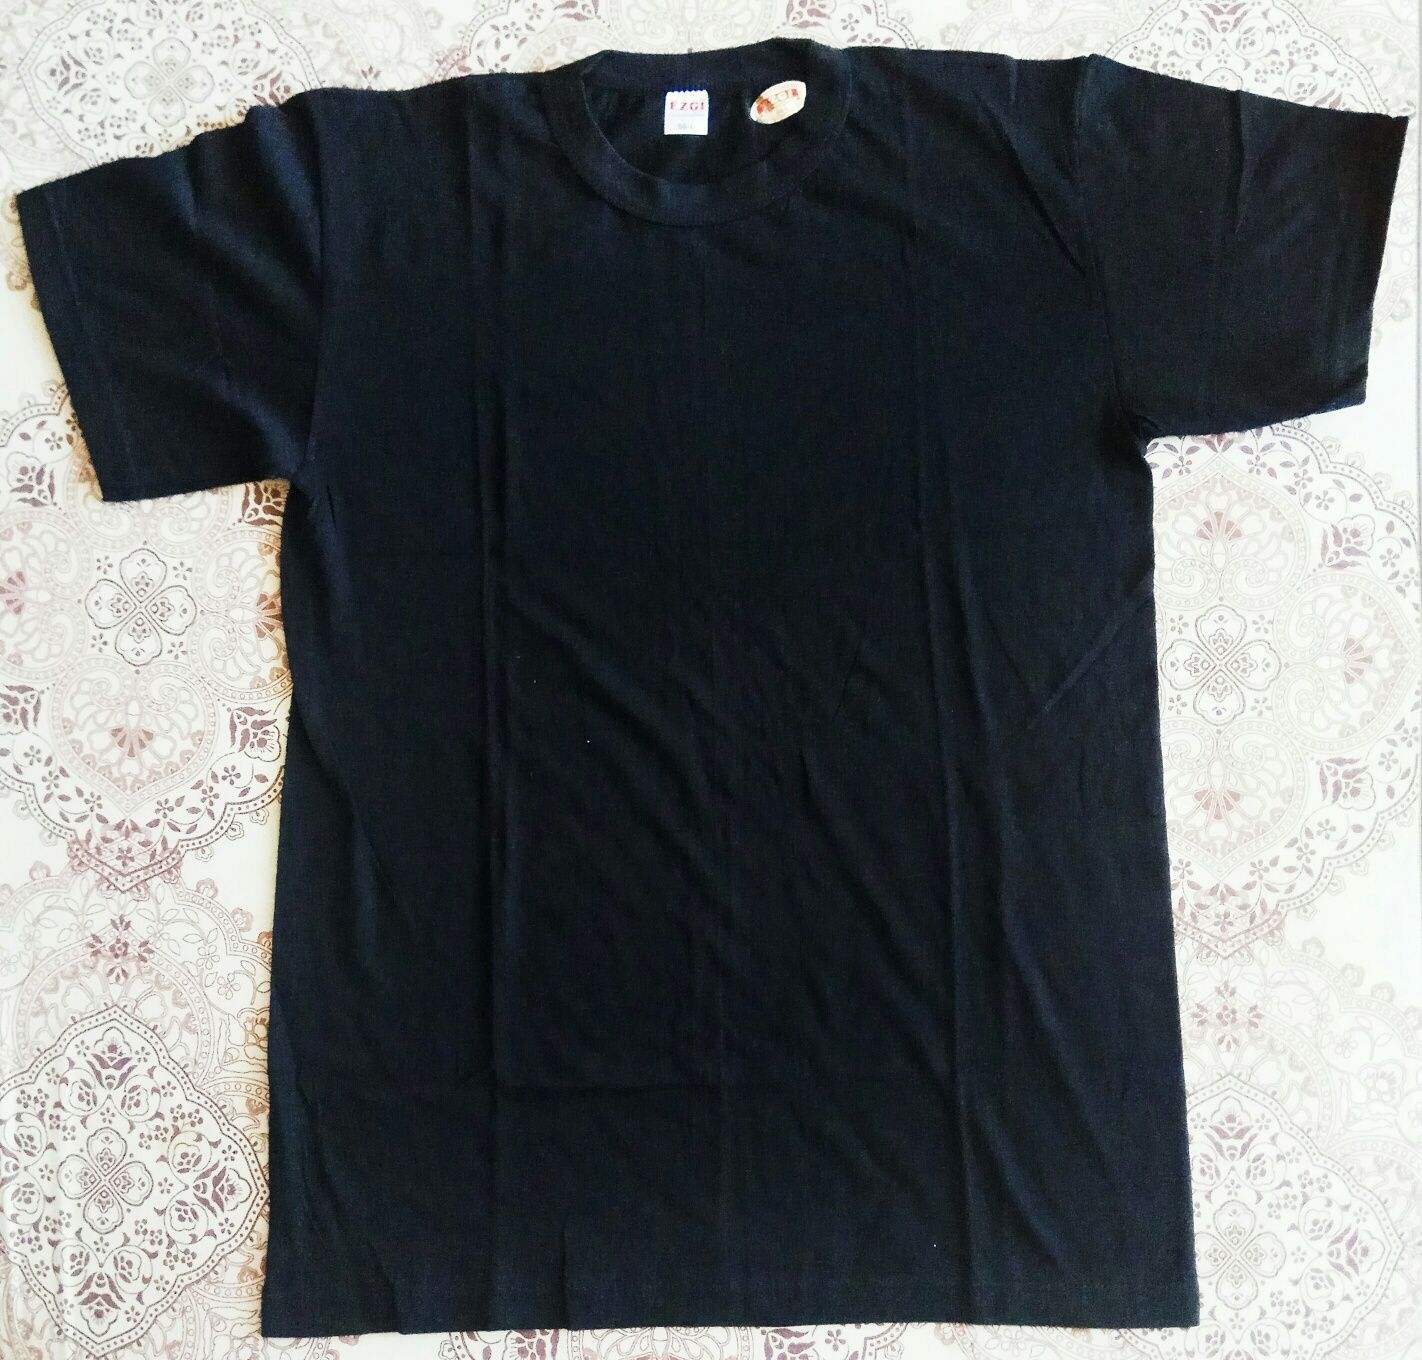 Базовая футболка (белая, серая, черная) Турция. Опт и розница